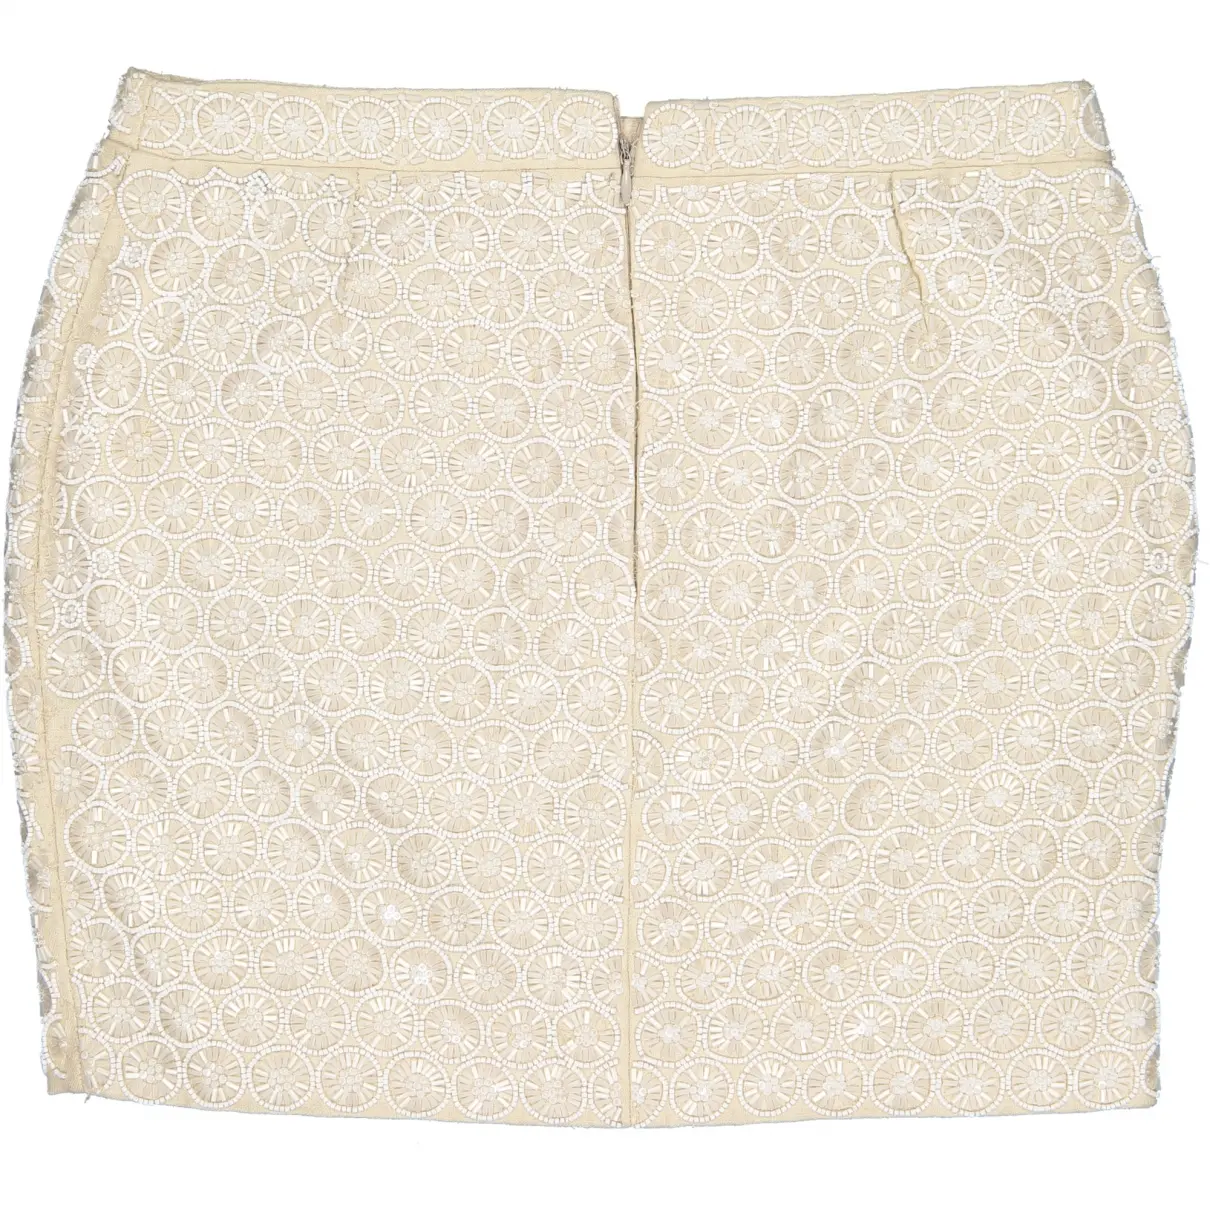 Andrew Gn Linen mini skirt for sale